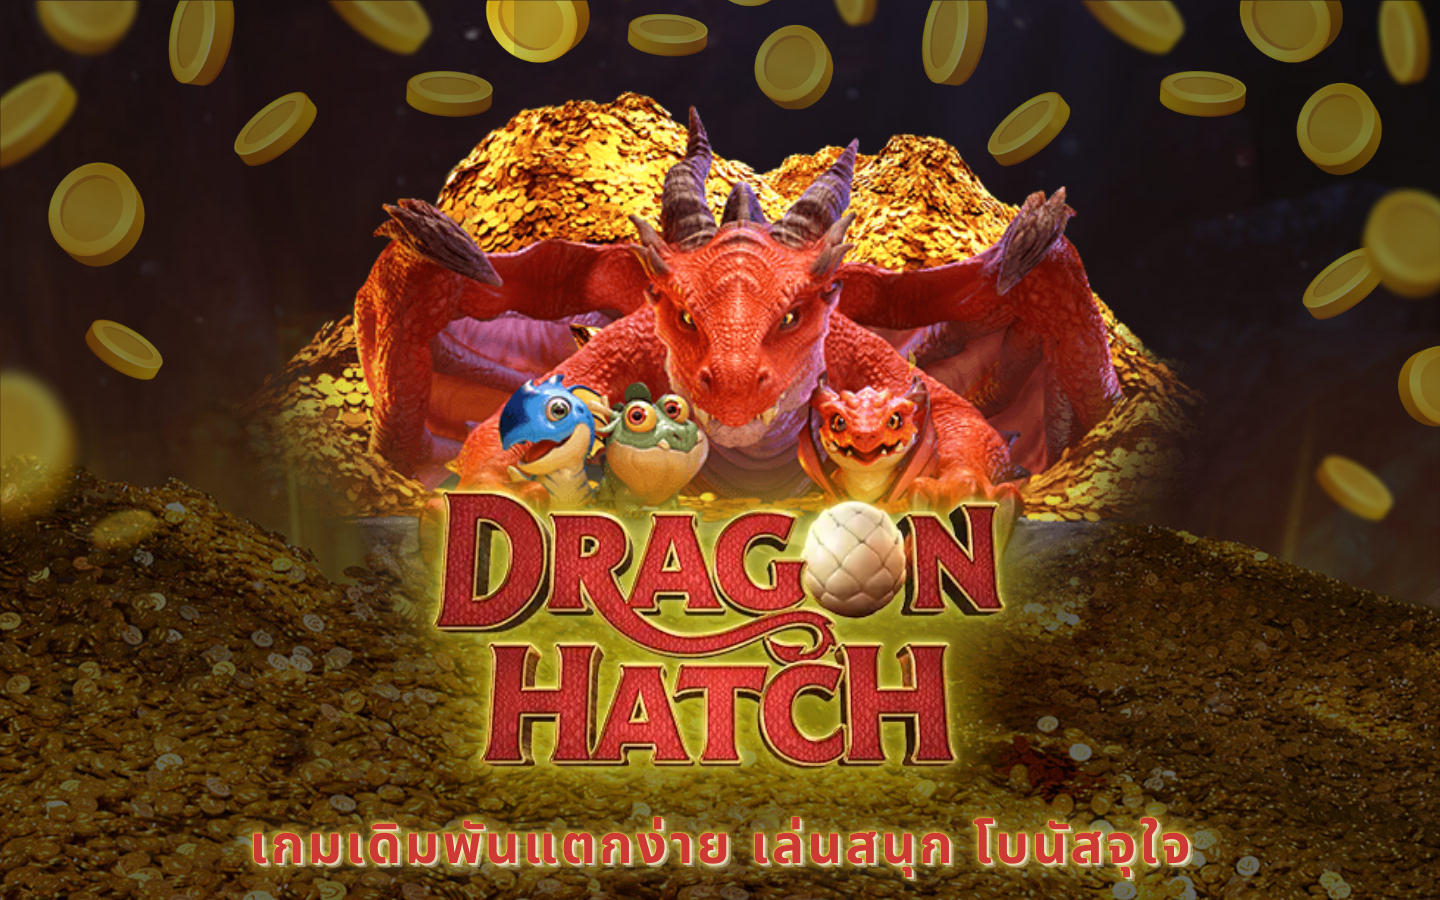 ดราก้อนสล็อต dragon hatch เกมเดิมพันแตกง่าย เล่นสนุก โบนัสจุใจ